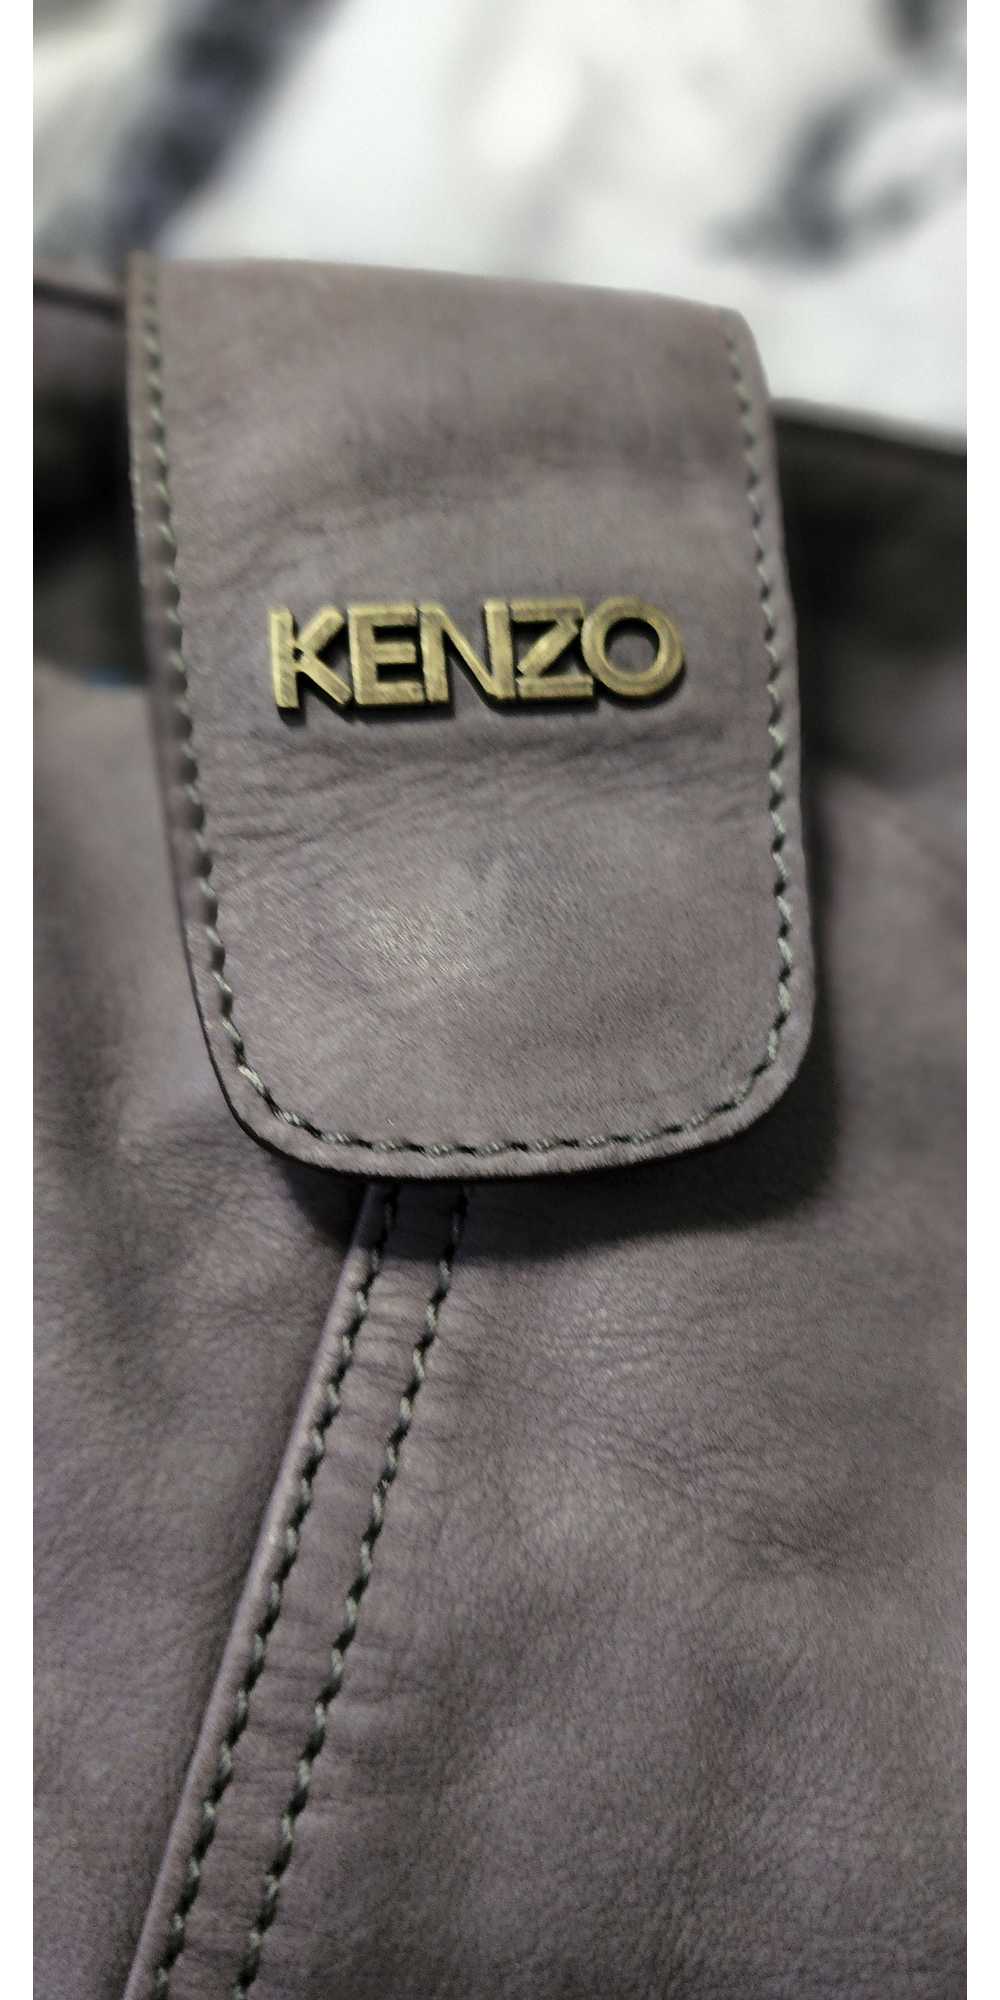 Kenzo Kenzo studded Handles Suede Tote Bag Handbag - image 2